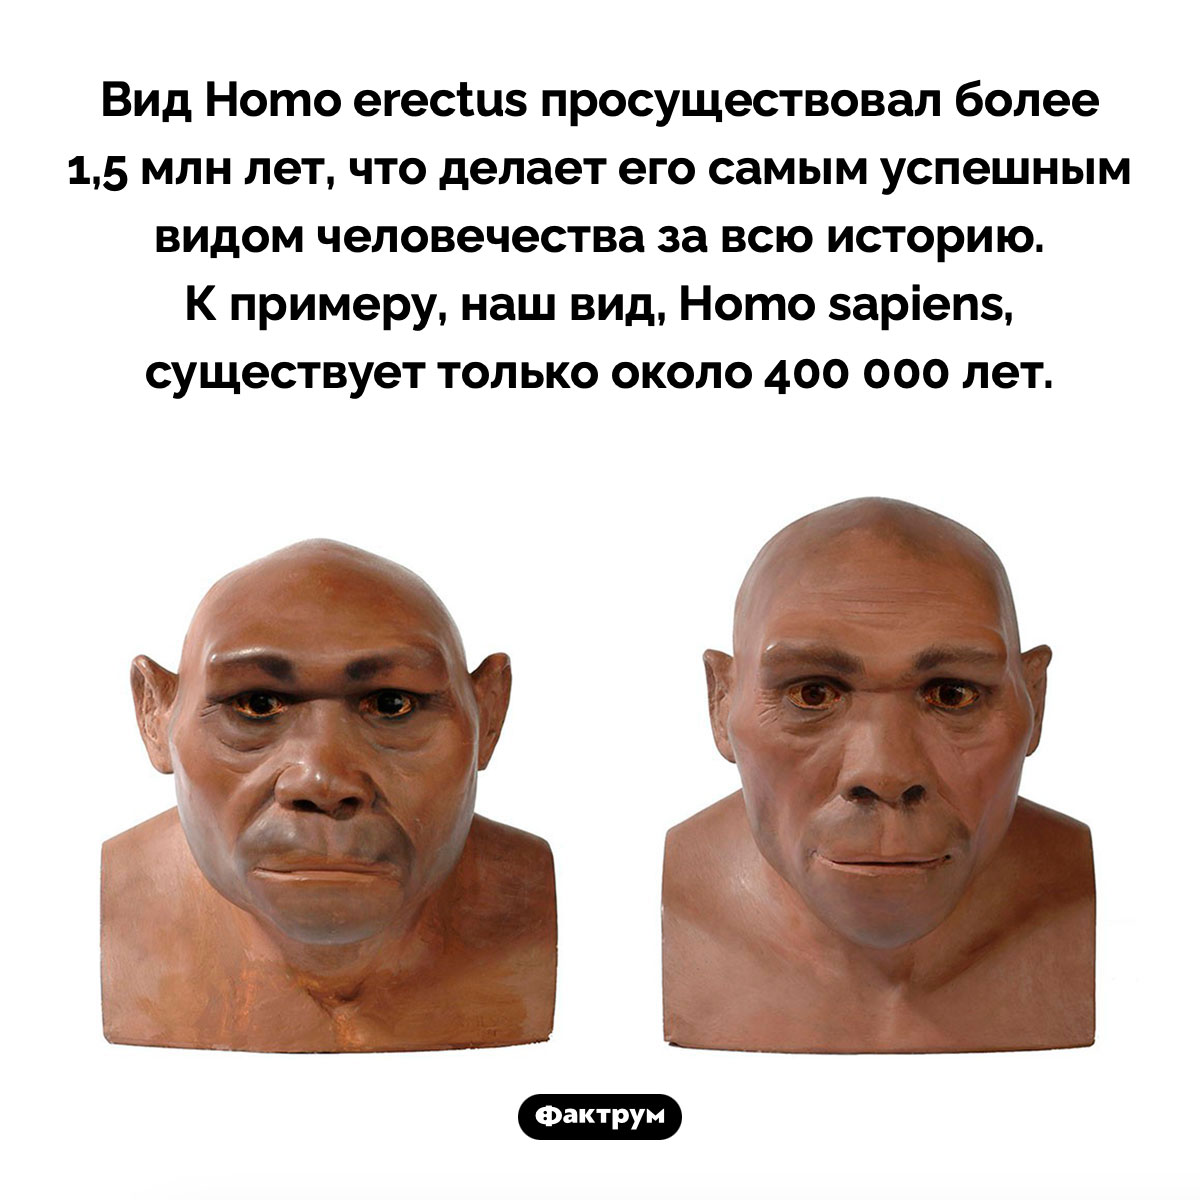 Самый успешный вид человека. Вид Homo erectus просуществовал более 1,5 млн лет, что делает его самым успешным видом человечества за всю историю. К примеру, наш вид, Homo sapiens, существует только около 400 000 лет.